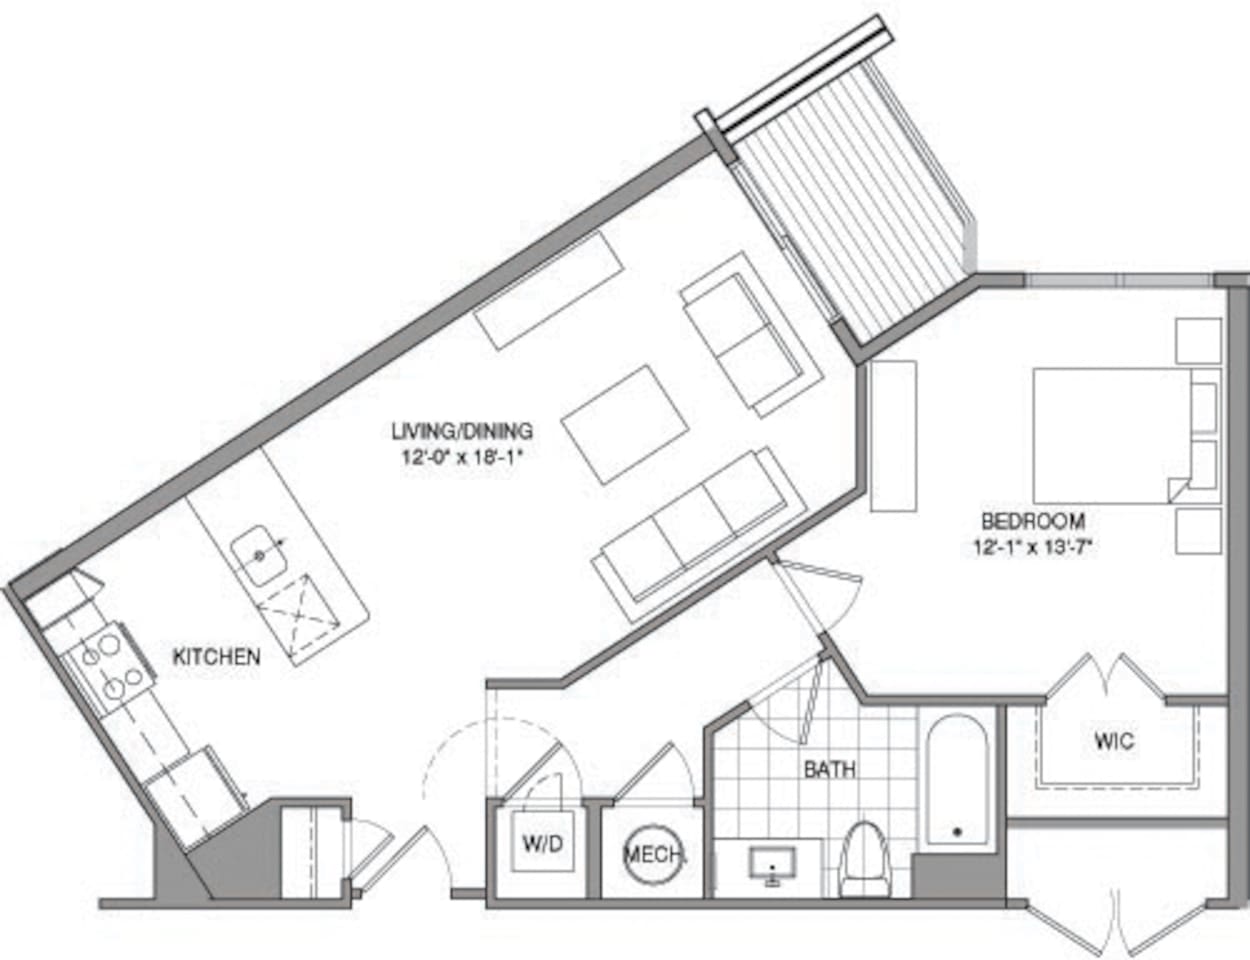 Floorplan diagram for 1 Bdrm E, showing 1 bedroom